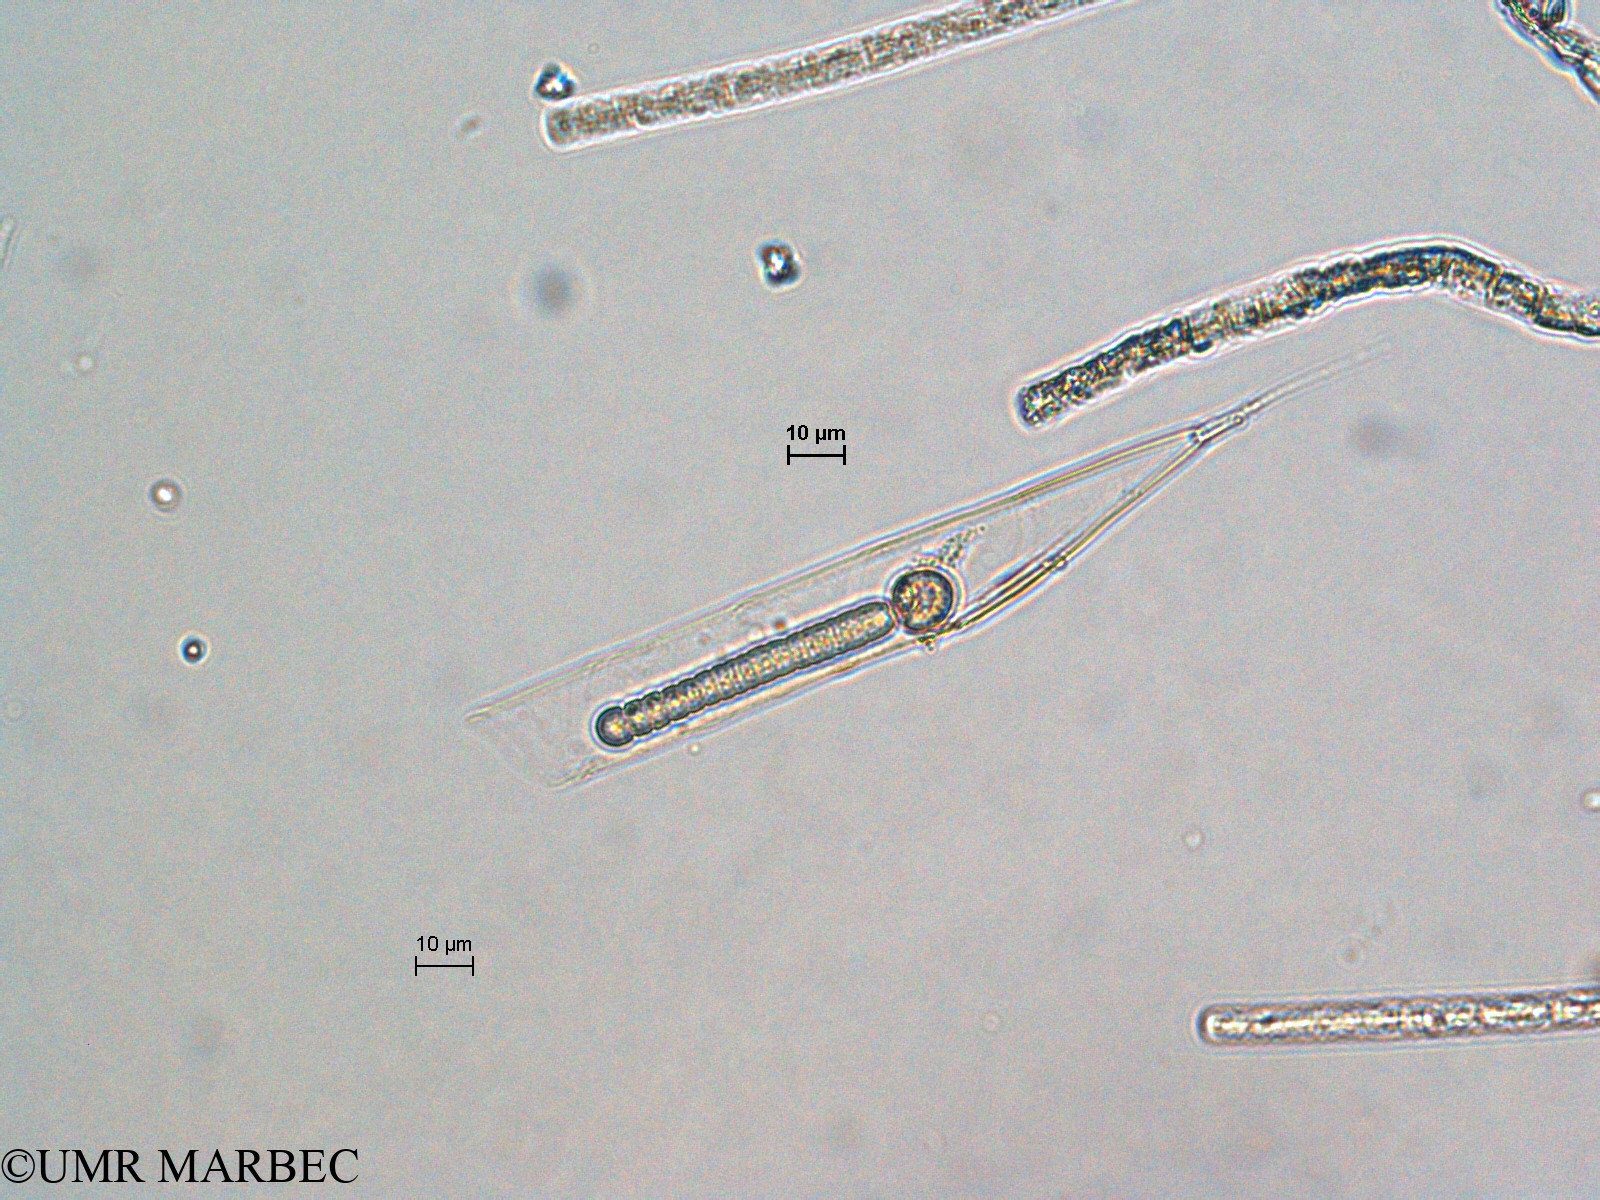 phyto/Scattered_Islands/all/COMMA April 2011/Rhizosolenia styliformis et Richelia intracellularis (ancien R. sp6 et Richelia épiphyte)(copy).jpg